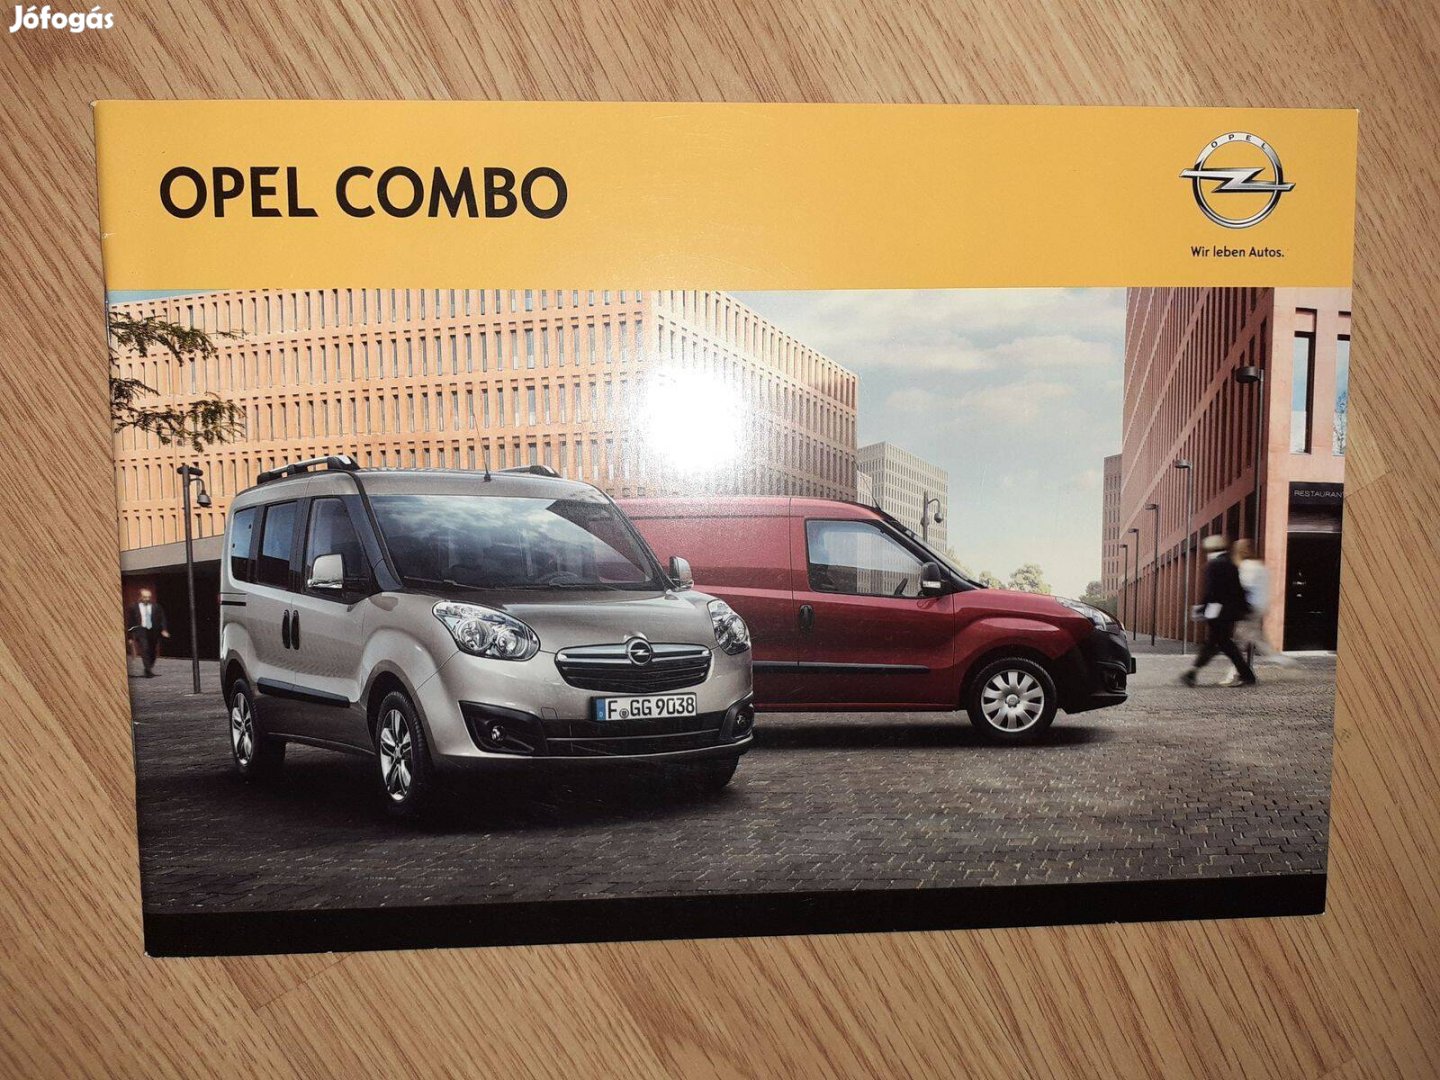 Opel Combo prospektus - 2012, magyar nyelvű